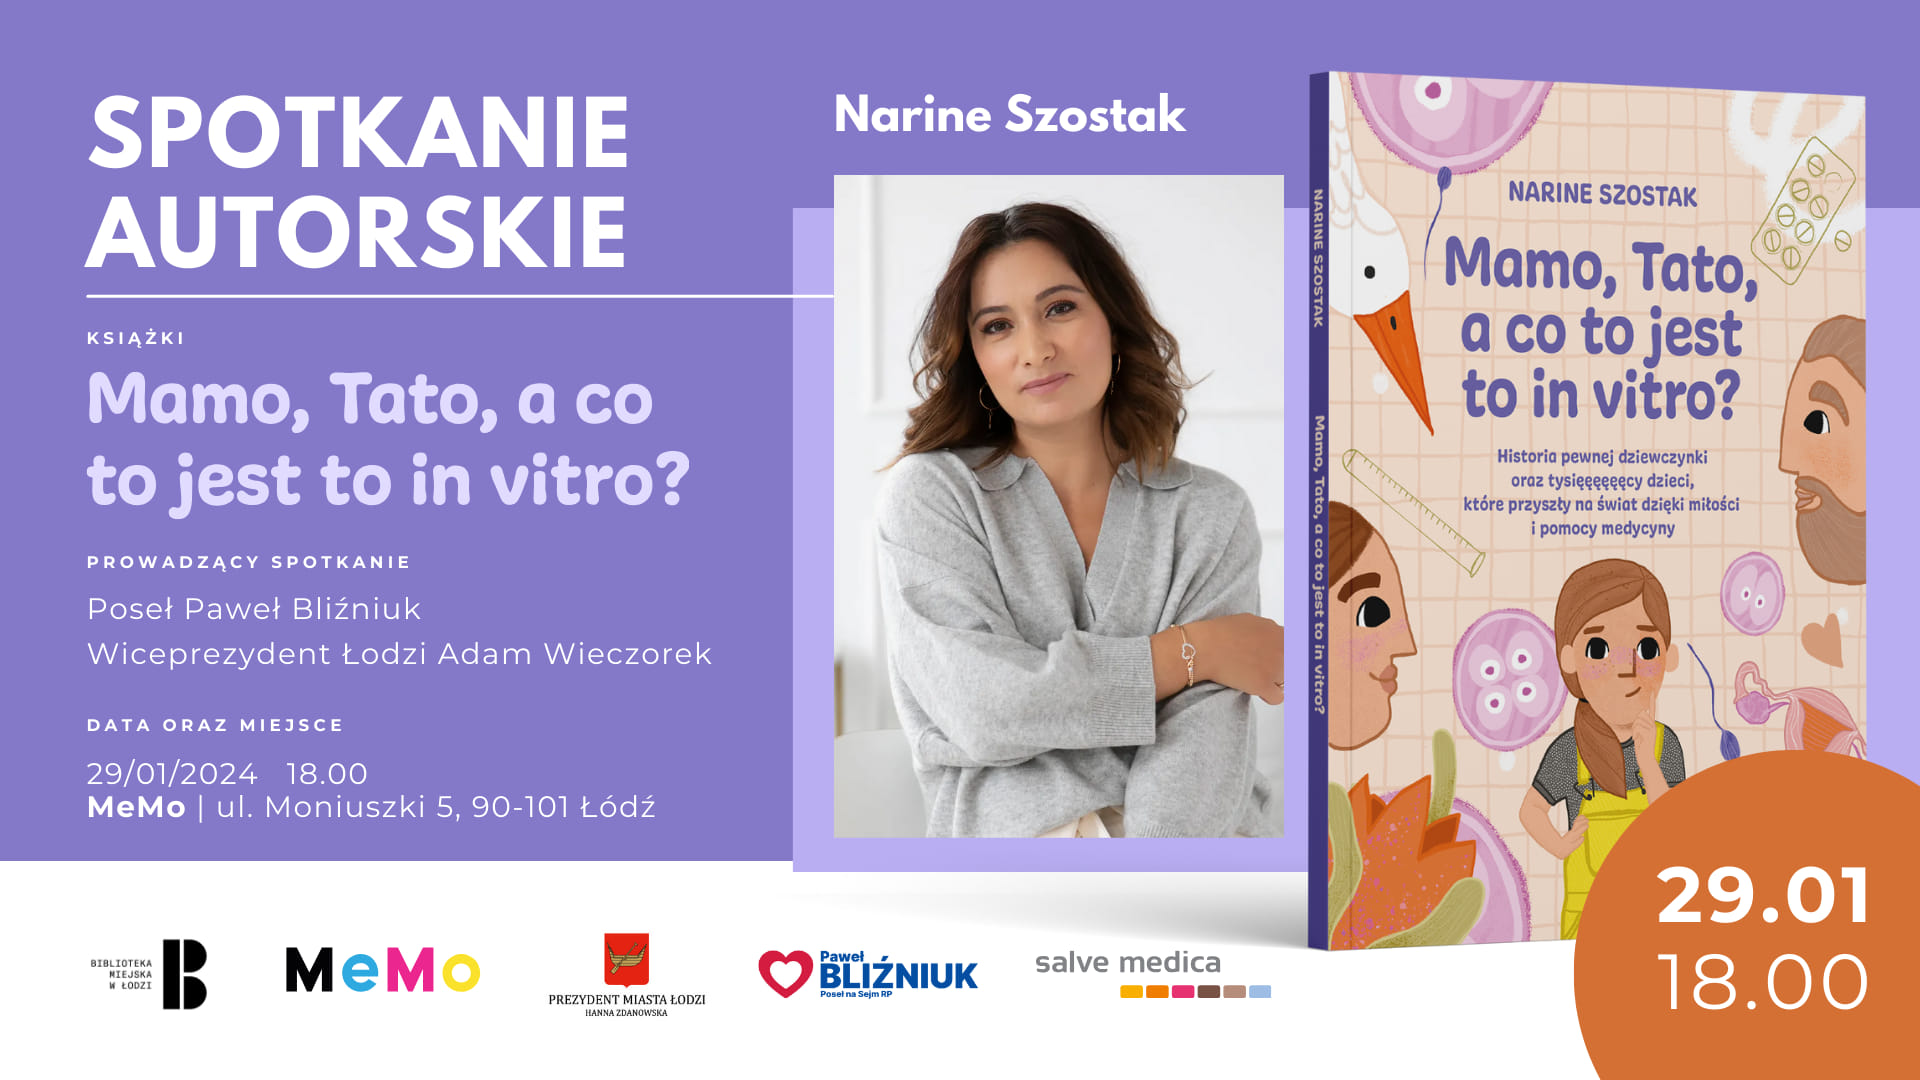 Spotkanie z Narine Szostak w Łodzi